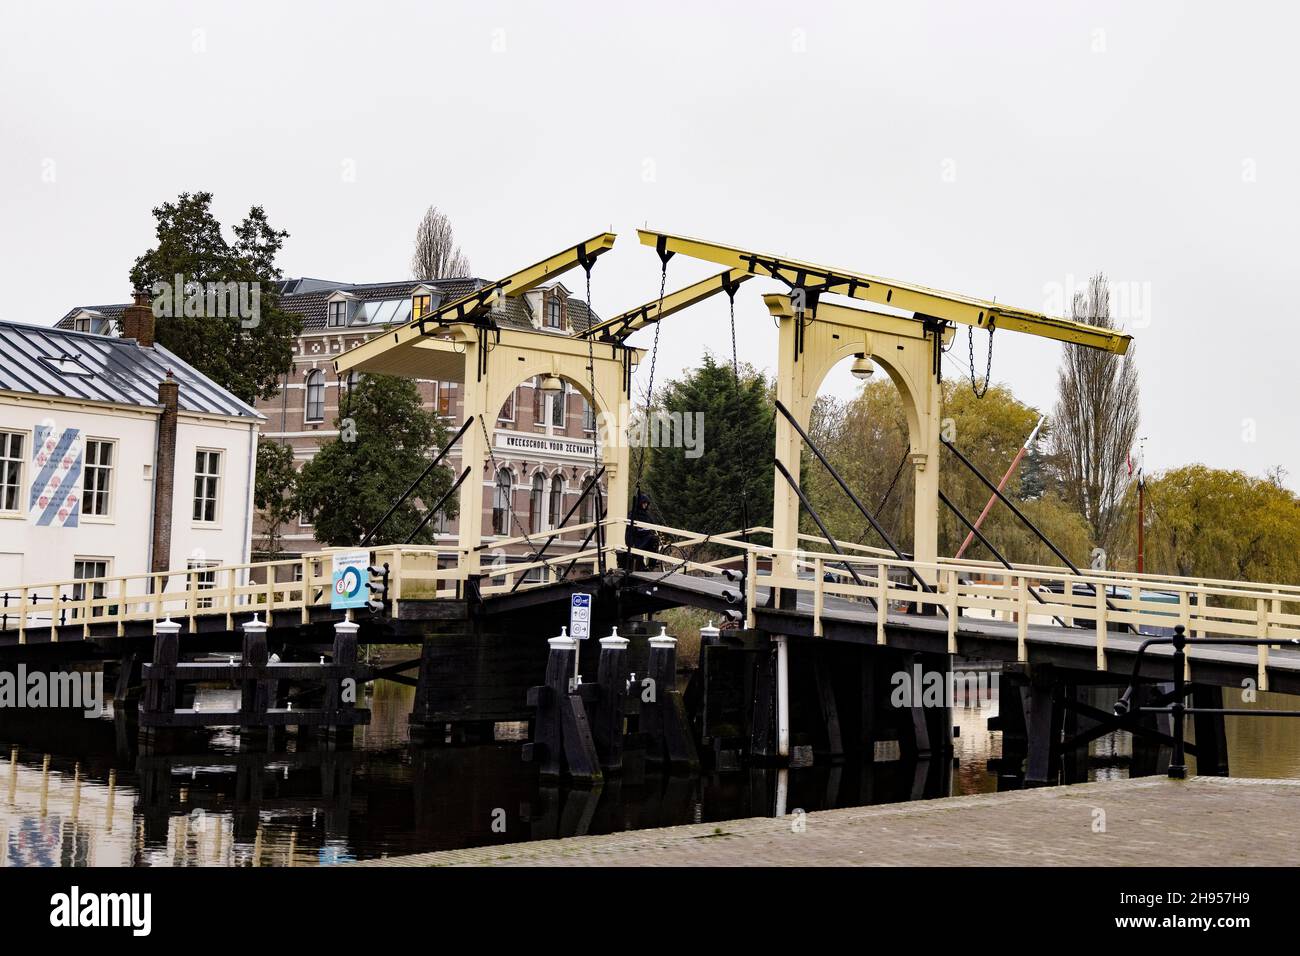 Il ponte Rembrandtbrug (ponte Rembrandt) è un ponte levatoio situato sulle acque del fiume Reno a Leiden, nei Paesi Bassi. Foto Stock